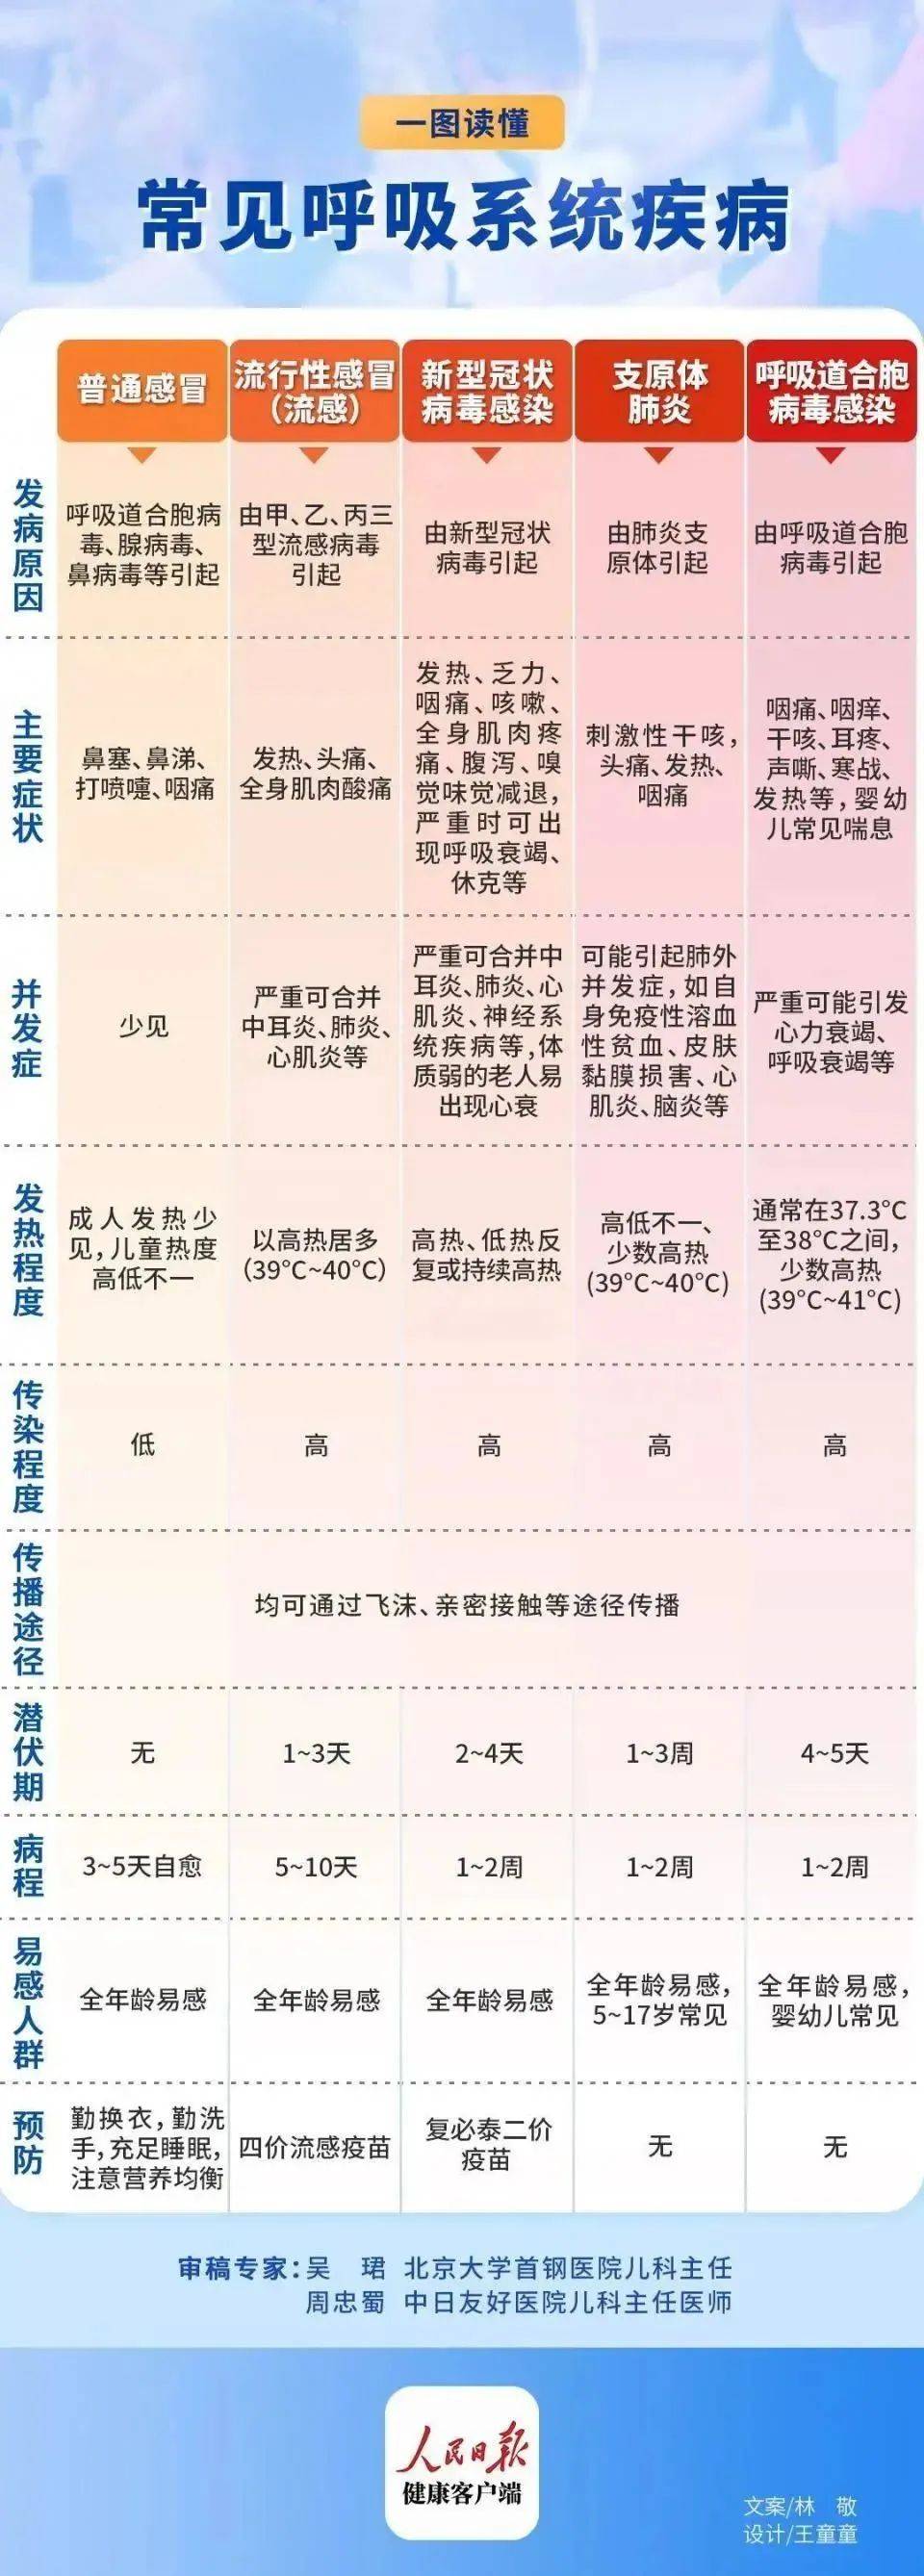 徐州市疾控中心免疫规划科科长宋晓哲介绍,流行性感冒(简称流感)在每